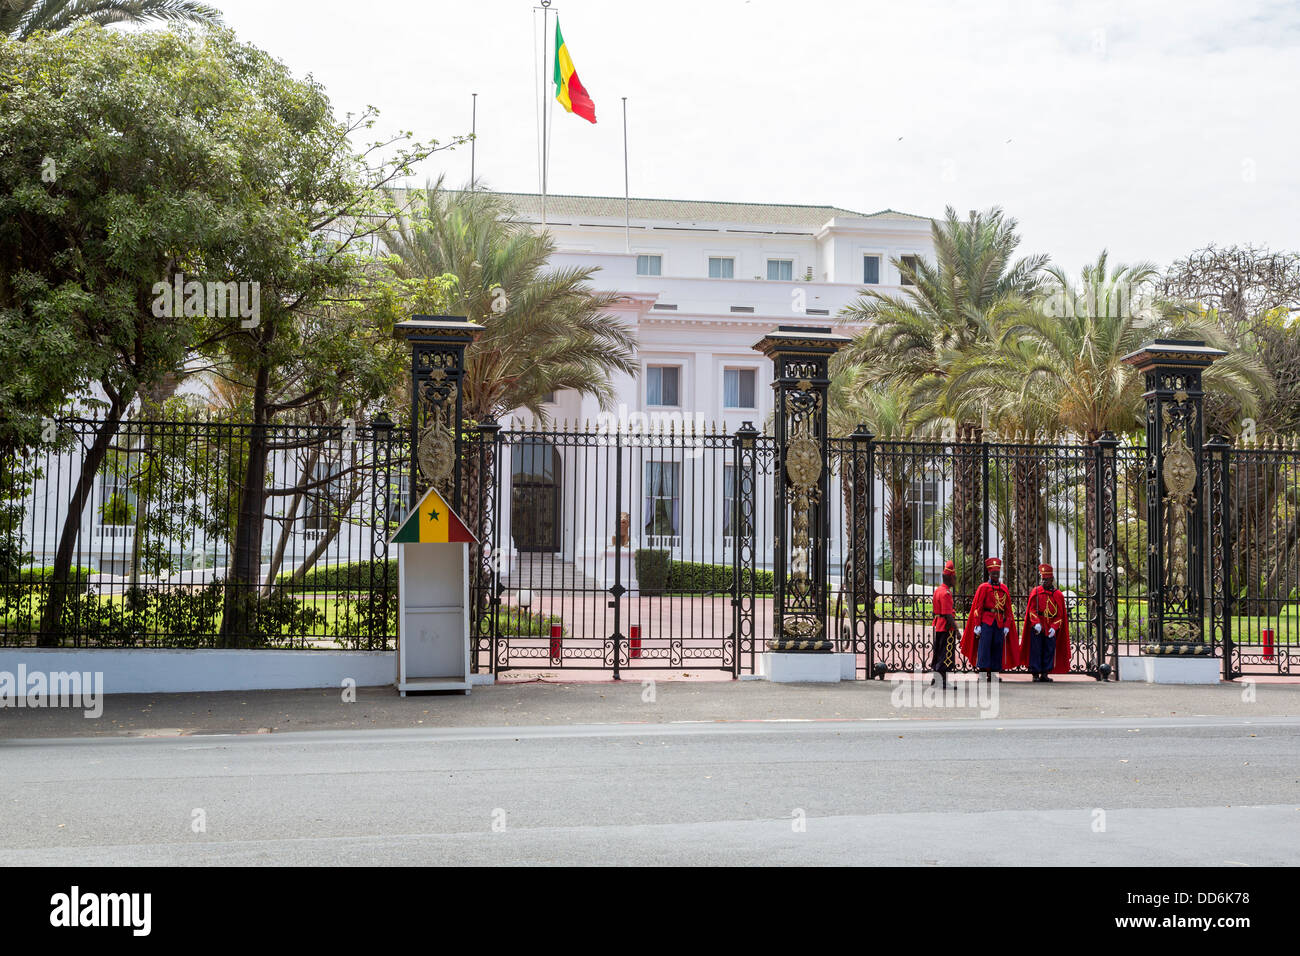 Dakar, Sénégal. Garde présidentielle devant le palais présidentiel. Relève de la garde. Banque D'Images